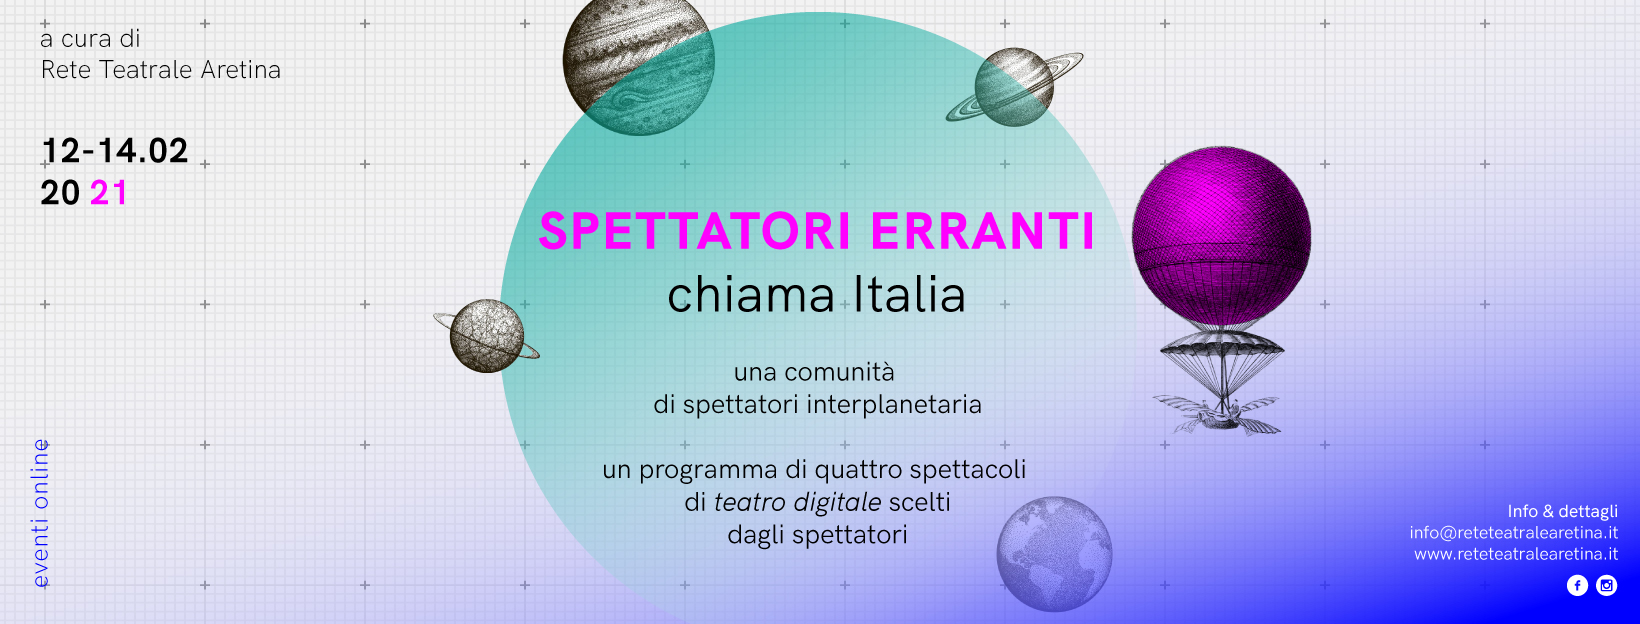 “Spettatori Erranti chiama Italia”: una comunità i spettatori interplanetaria